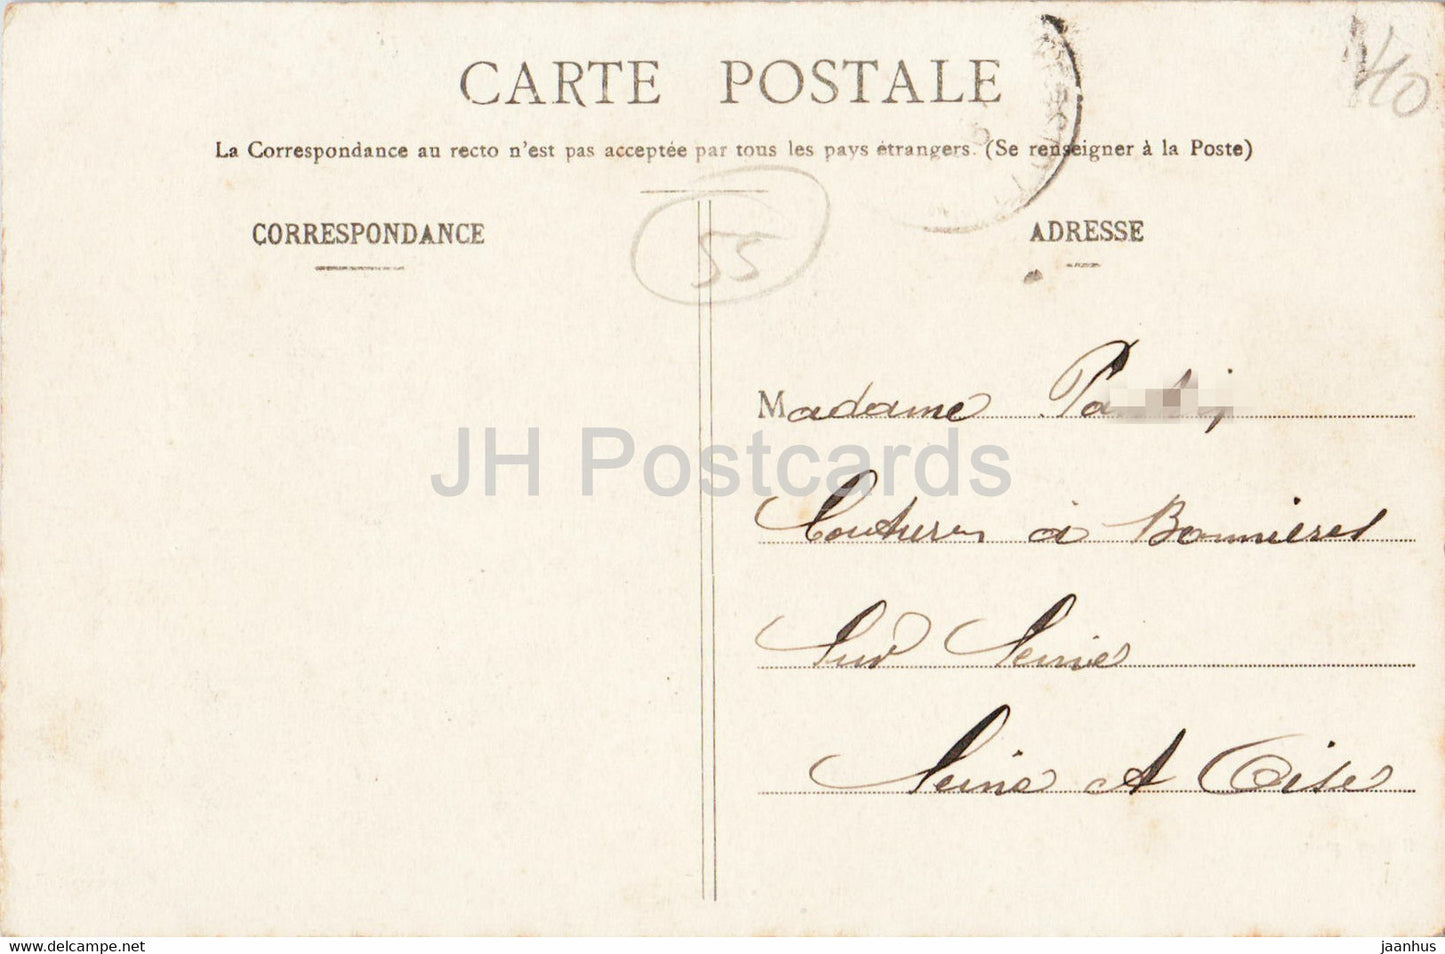 St Mihiel - Le Pont - Les Capucins - A Motlet - pont - carte postale ancienne - 1905 - France - occasion